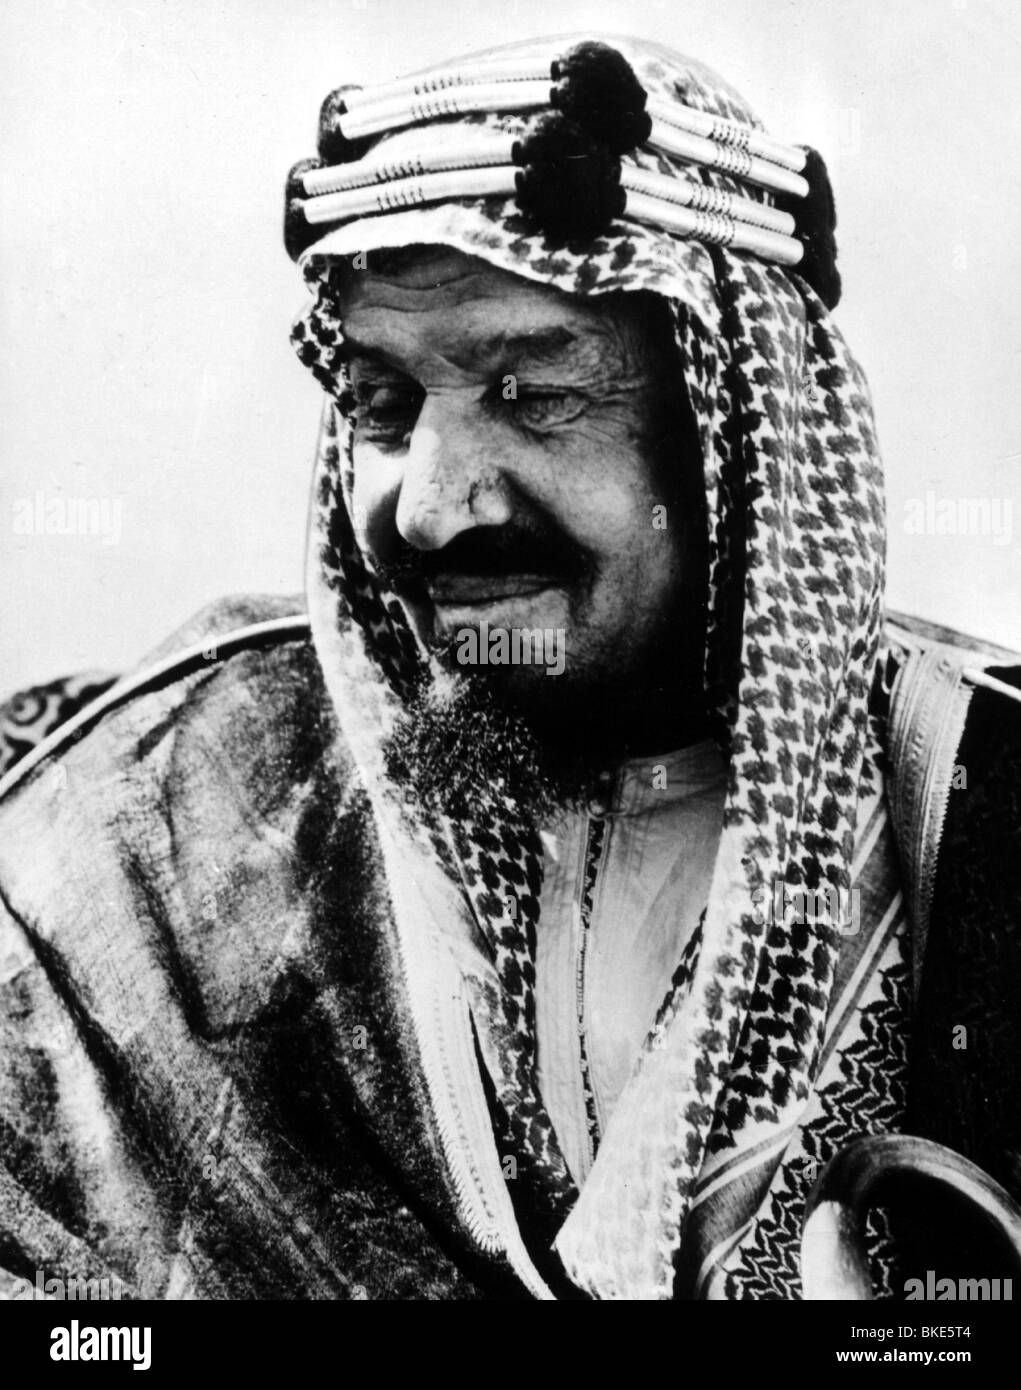 Ibn Saud, Abdul Aziz, 24.11.1880 - 9.11.1953, monarca dell'Arabia Saudita dal 1932, ritratto, 1950s, Foto Stock